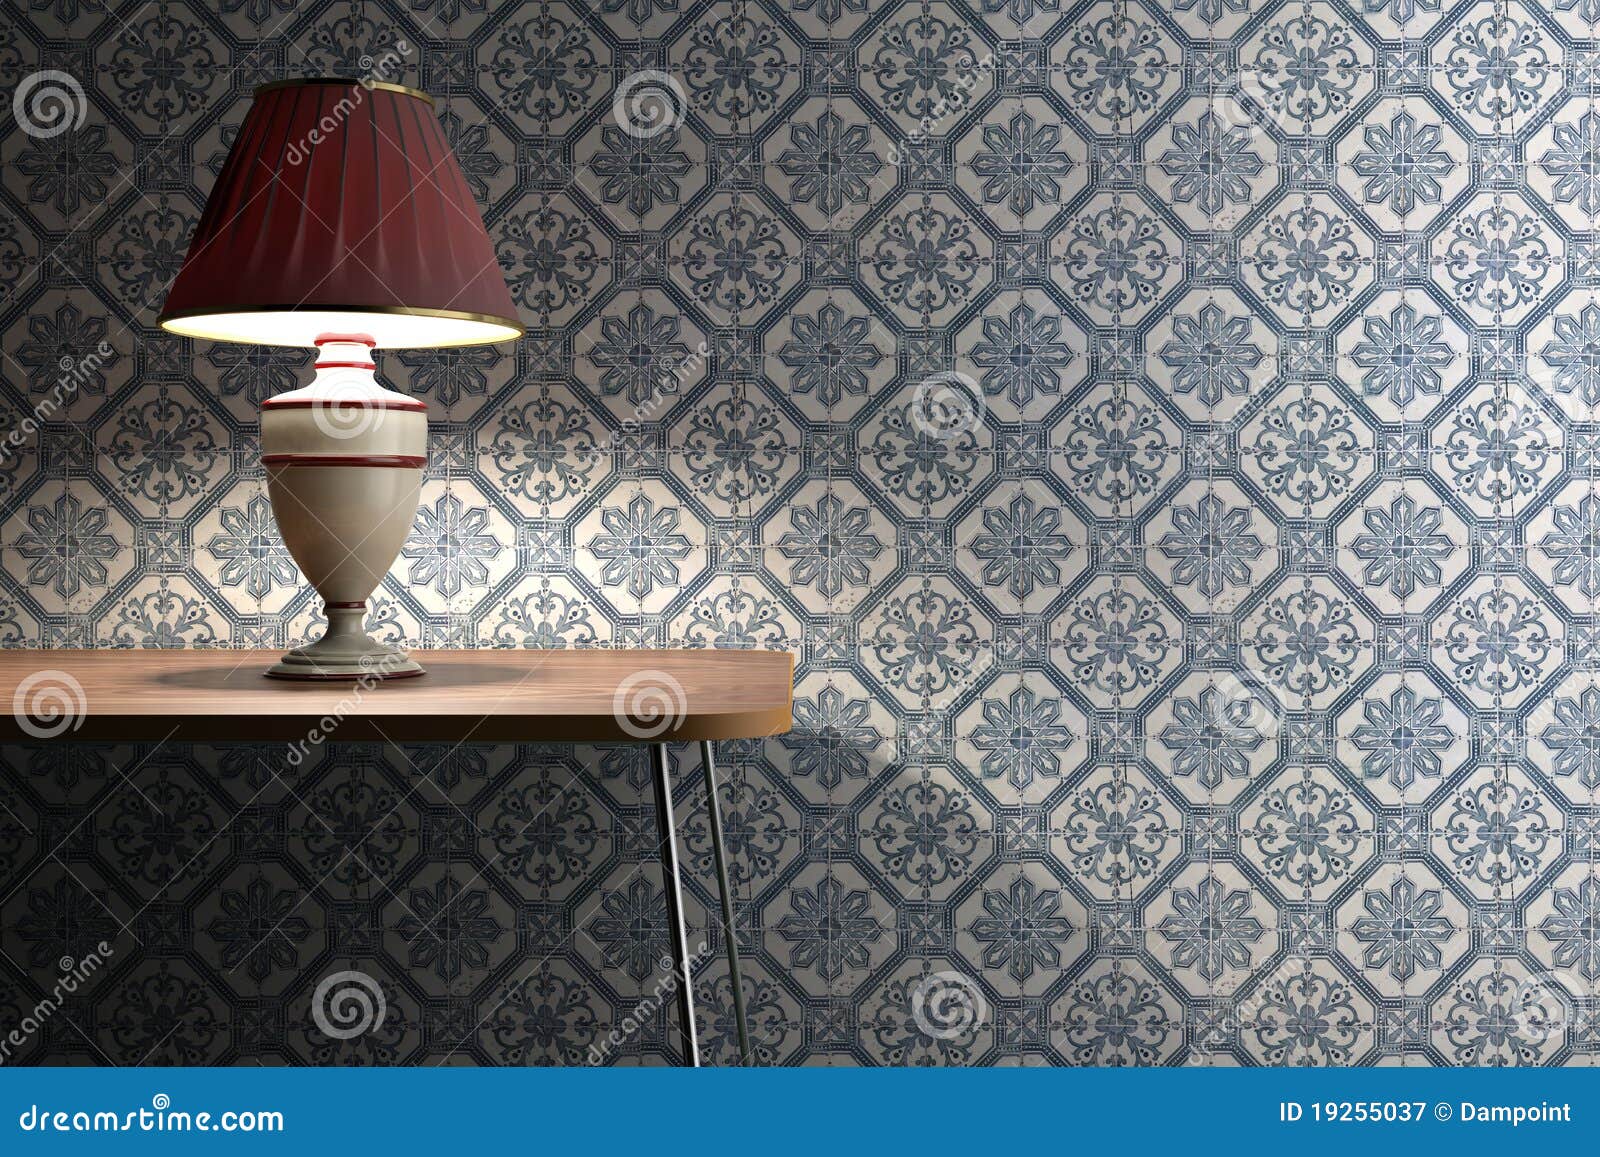 vintage lamp on tiles background